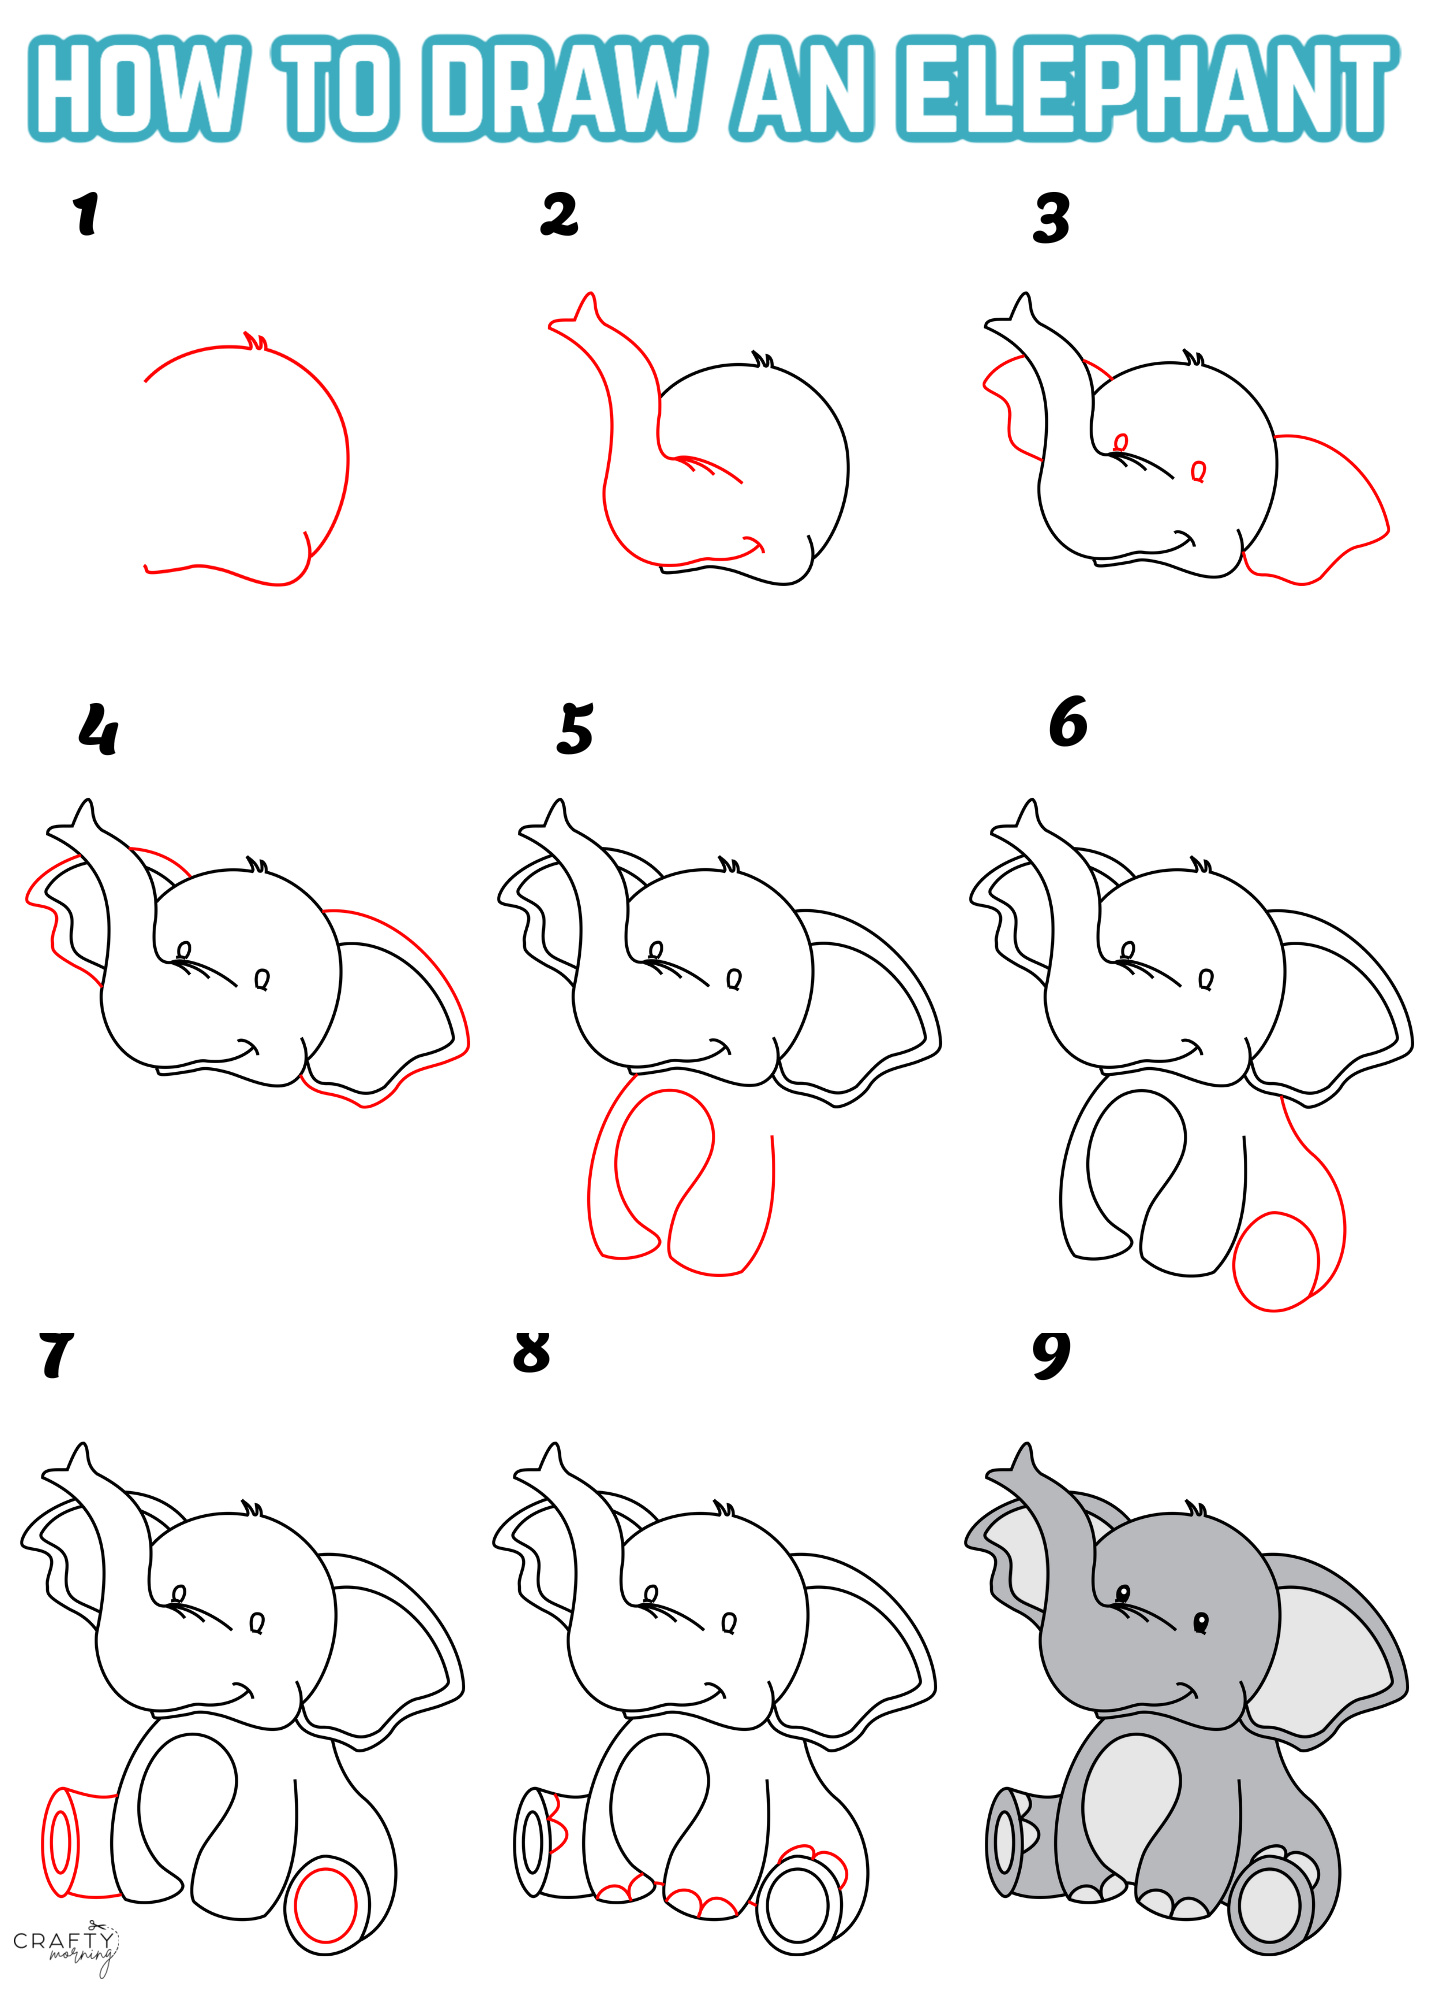 How to draw cute Elephant easy steps-saigonsouth.com.vn